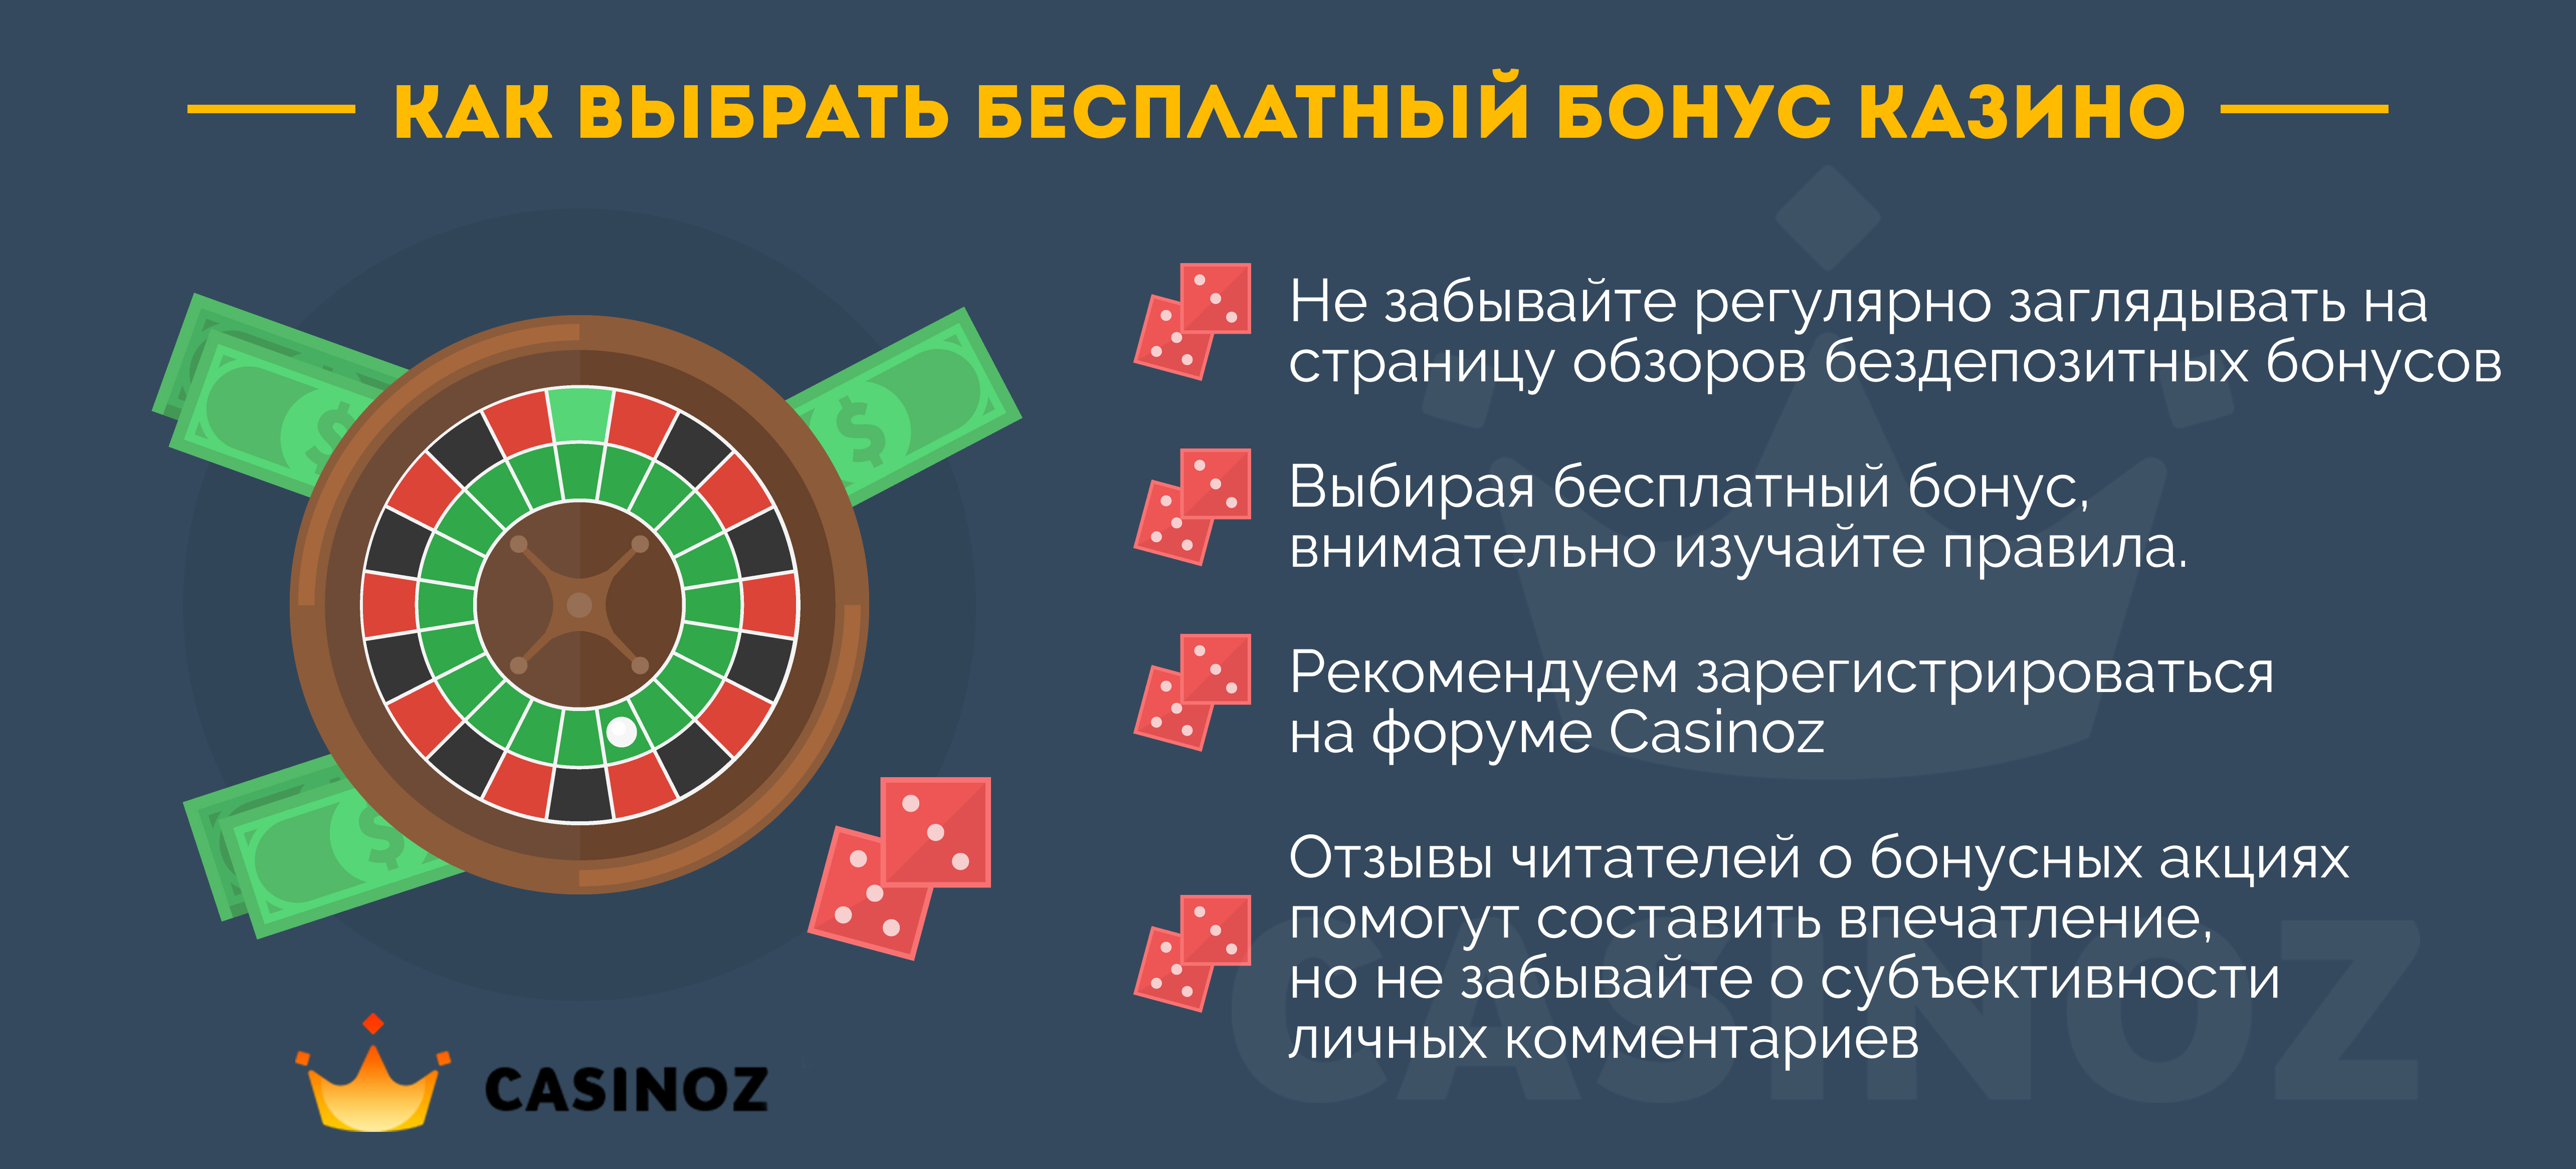 Казино онлайн бесплатно и с бонусом казино с выводом денег